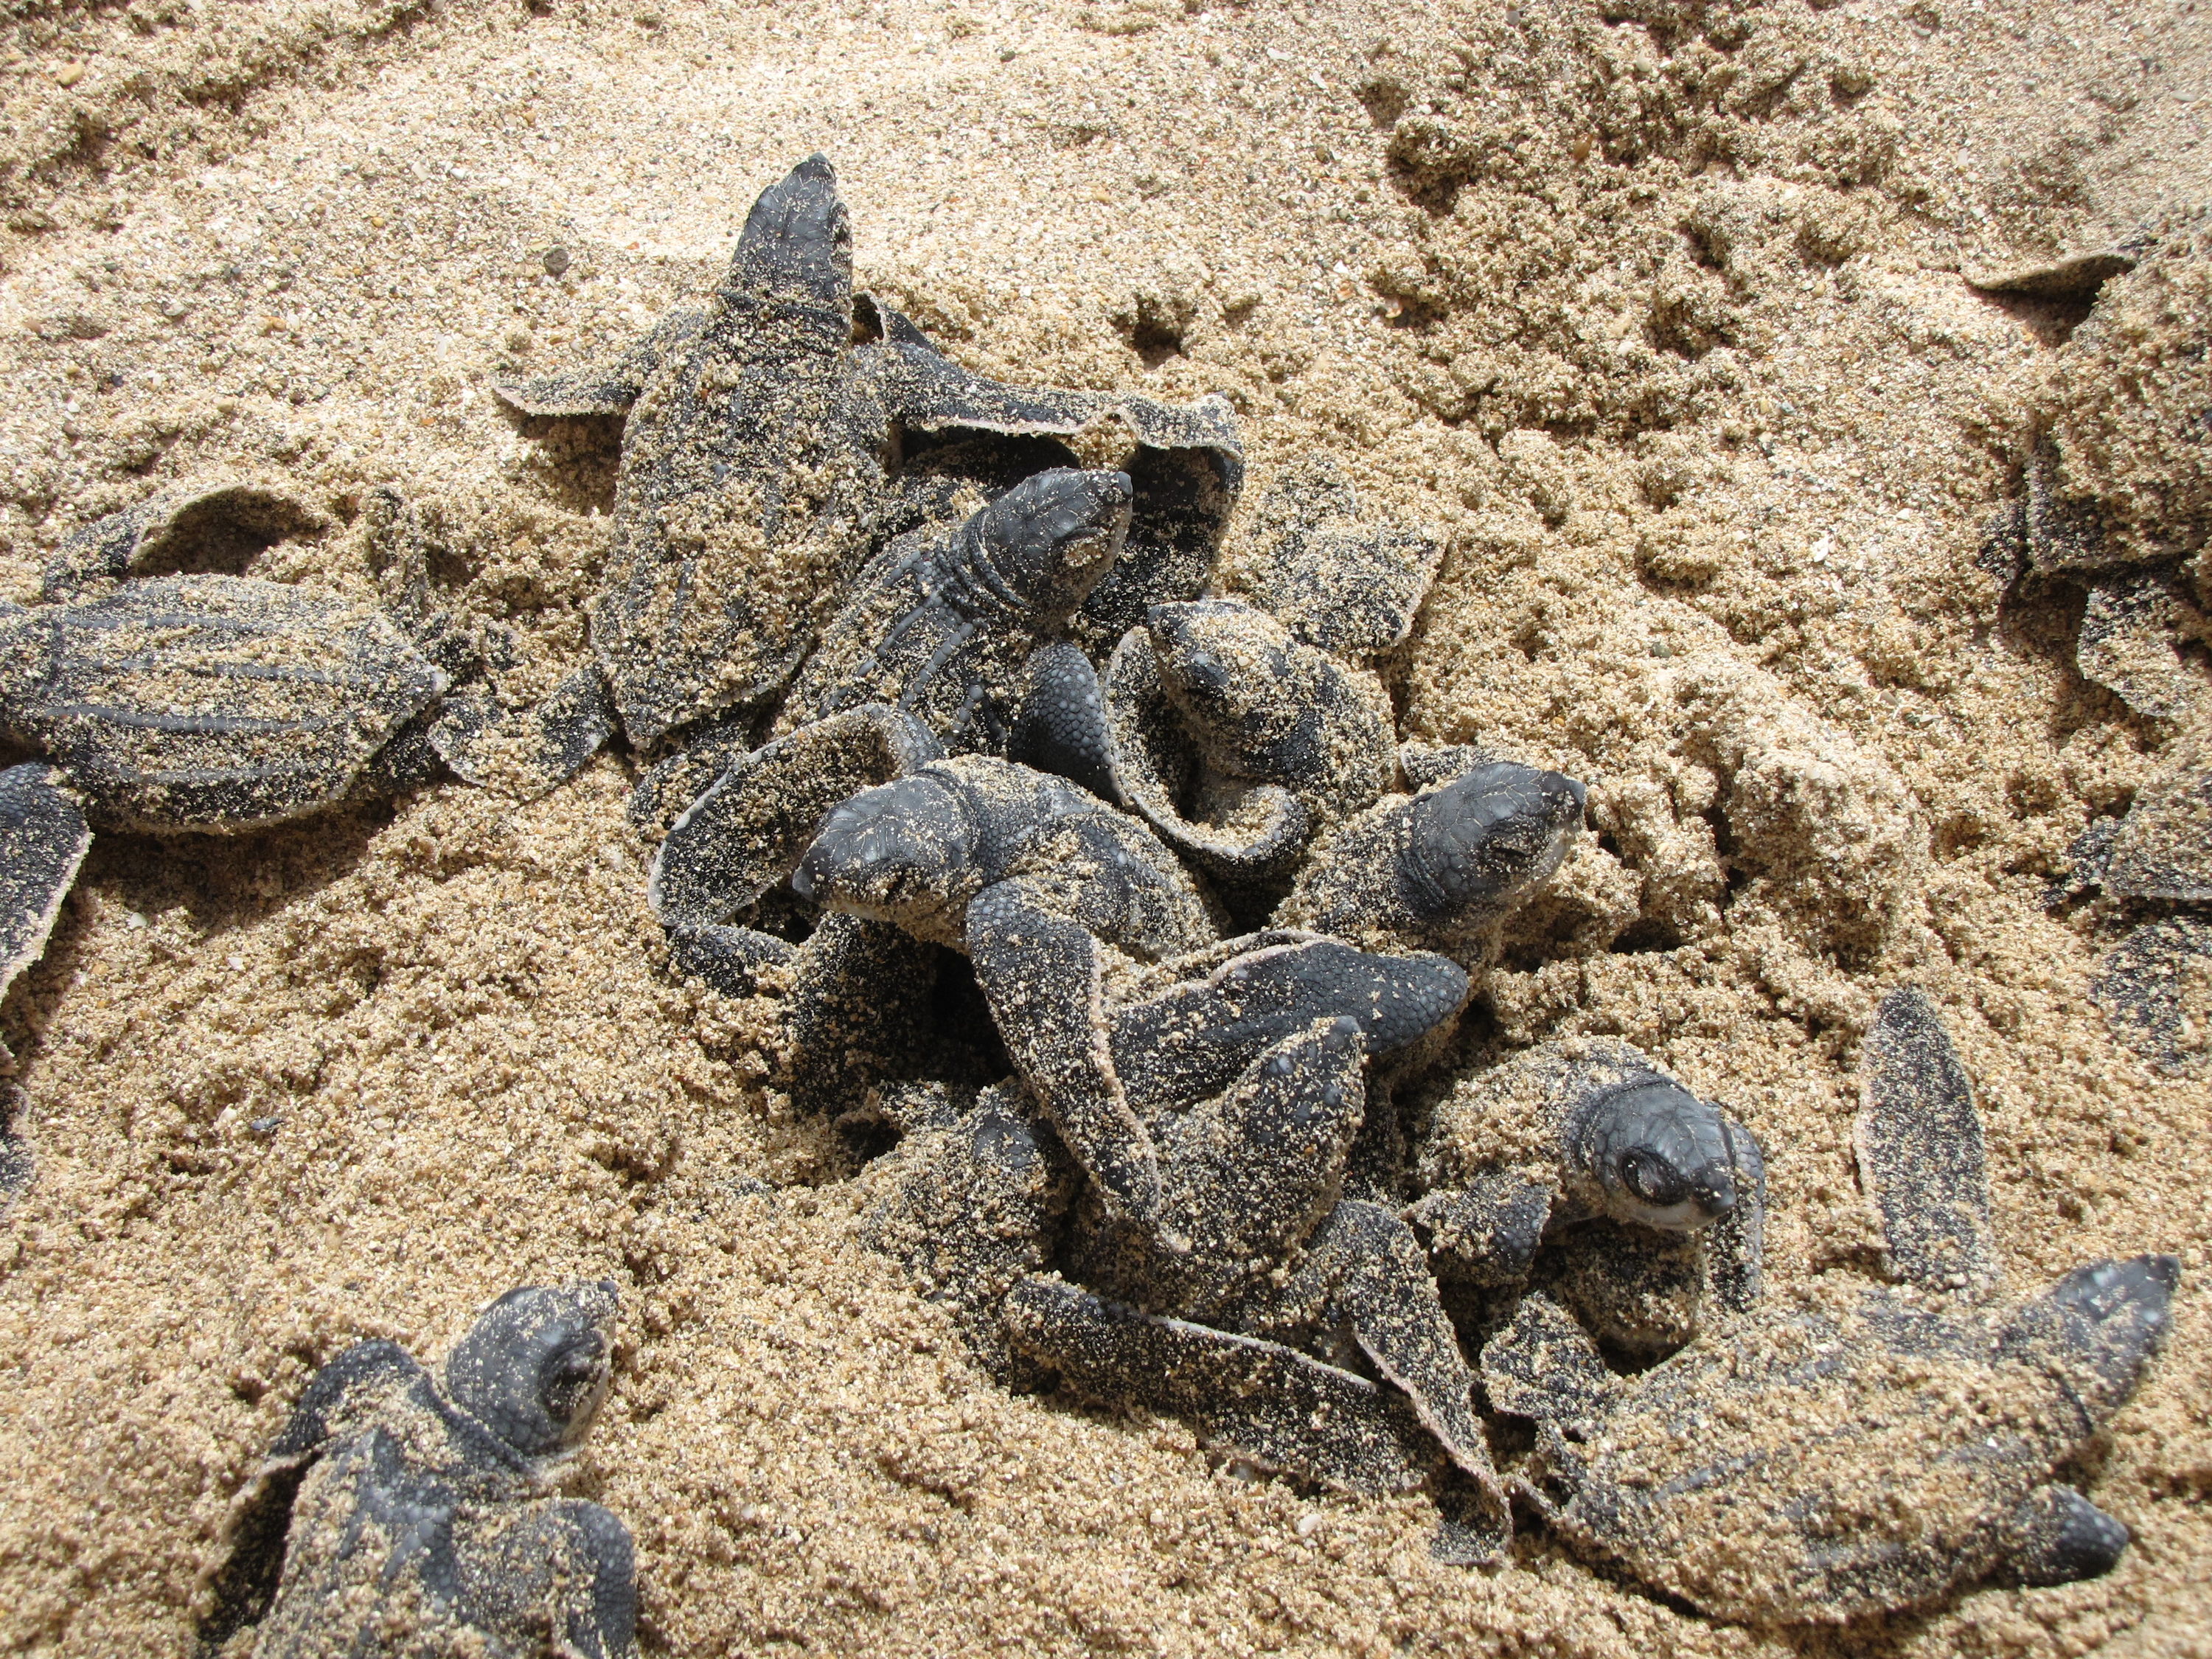 Multiple Sea Turtle Hatchlings